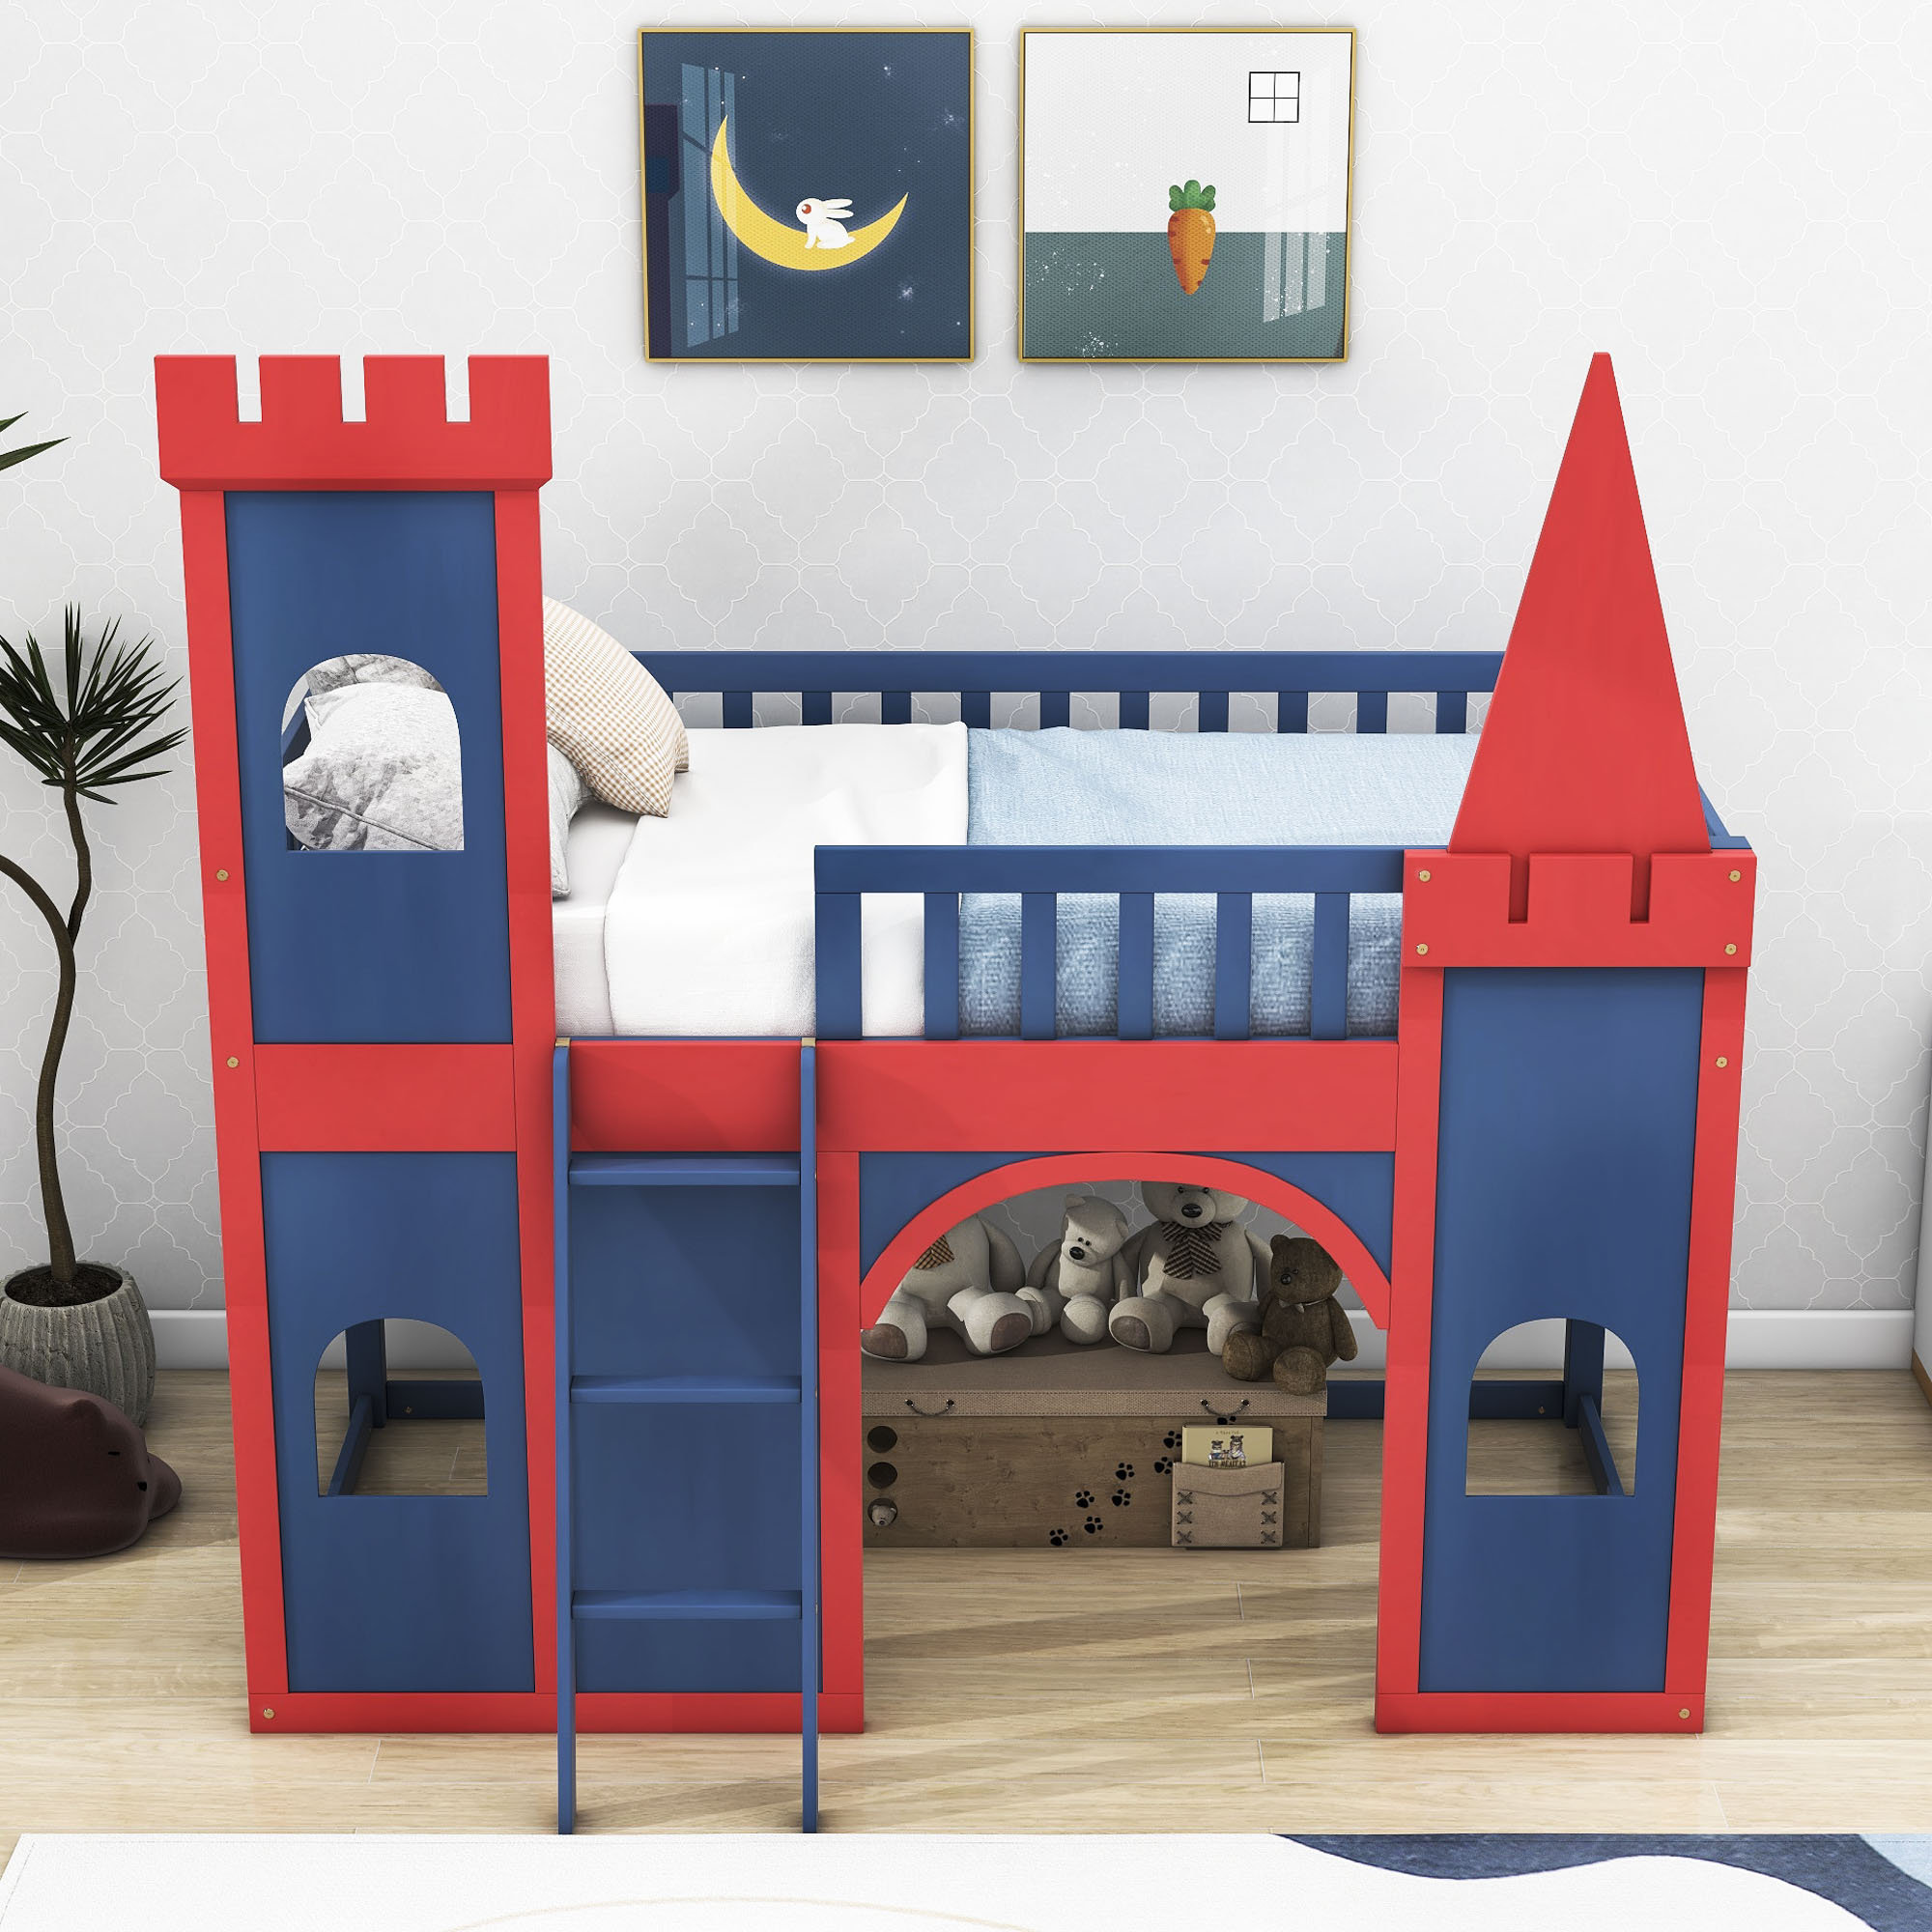 castle bunk bed